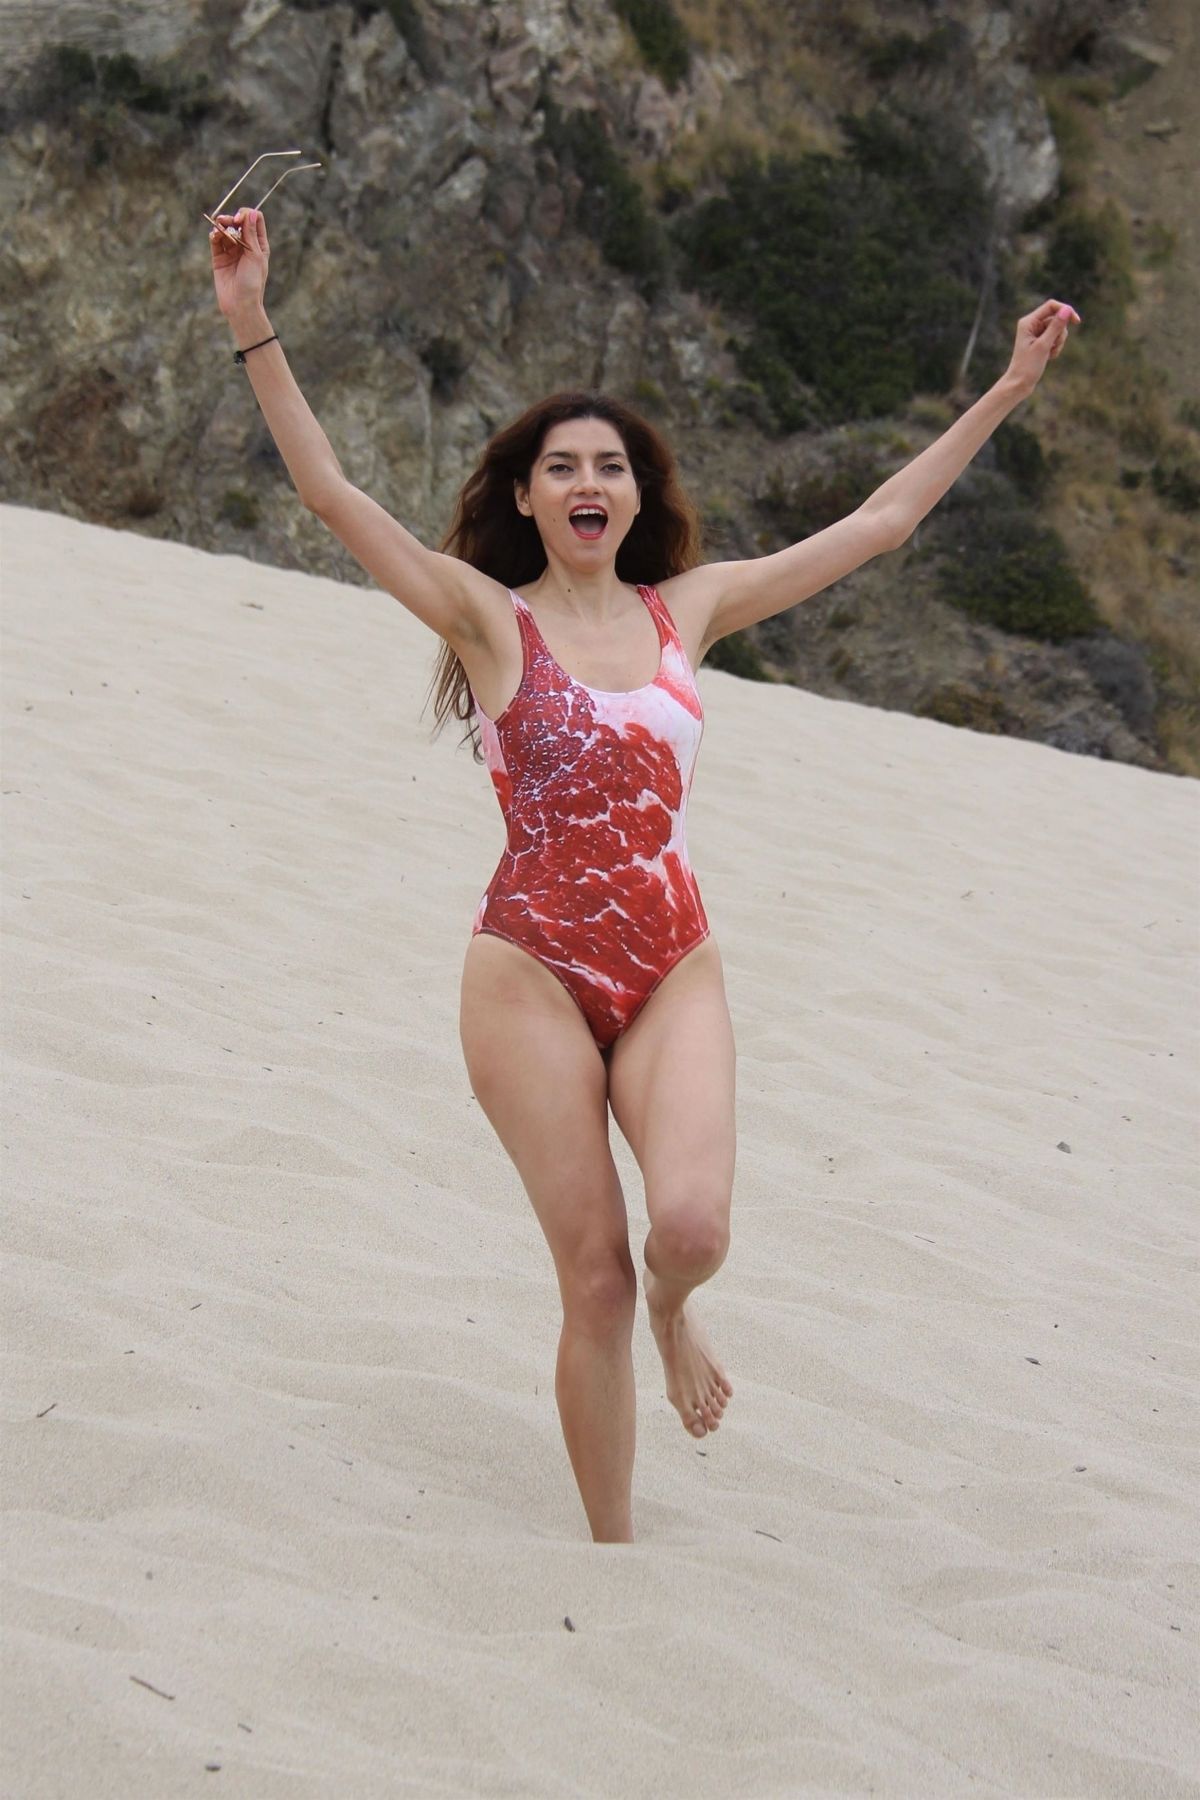 BLANCA BLANCO in Swimsuit on a Sandy Hill in Malibu 07/03/2018